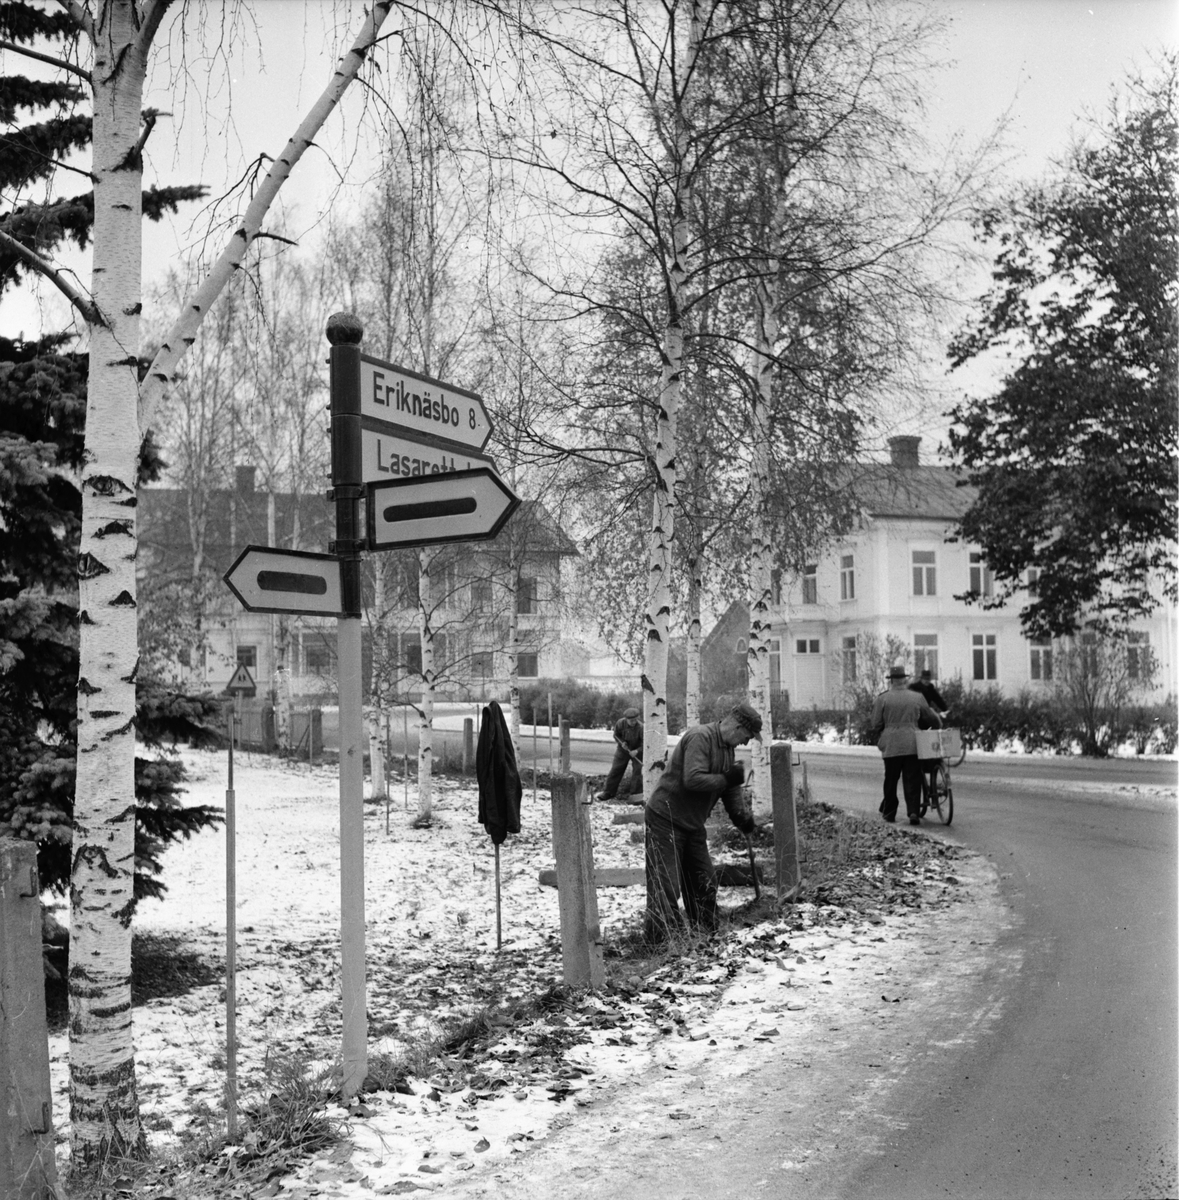 Församlingshusets besvärliga kurva får gångbana.
1955